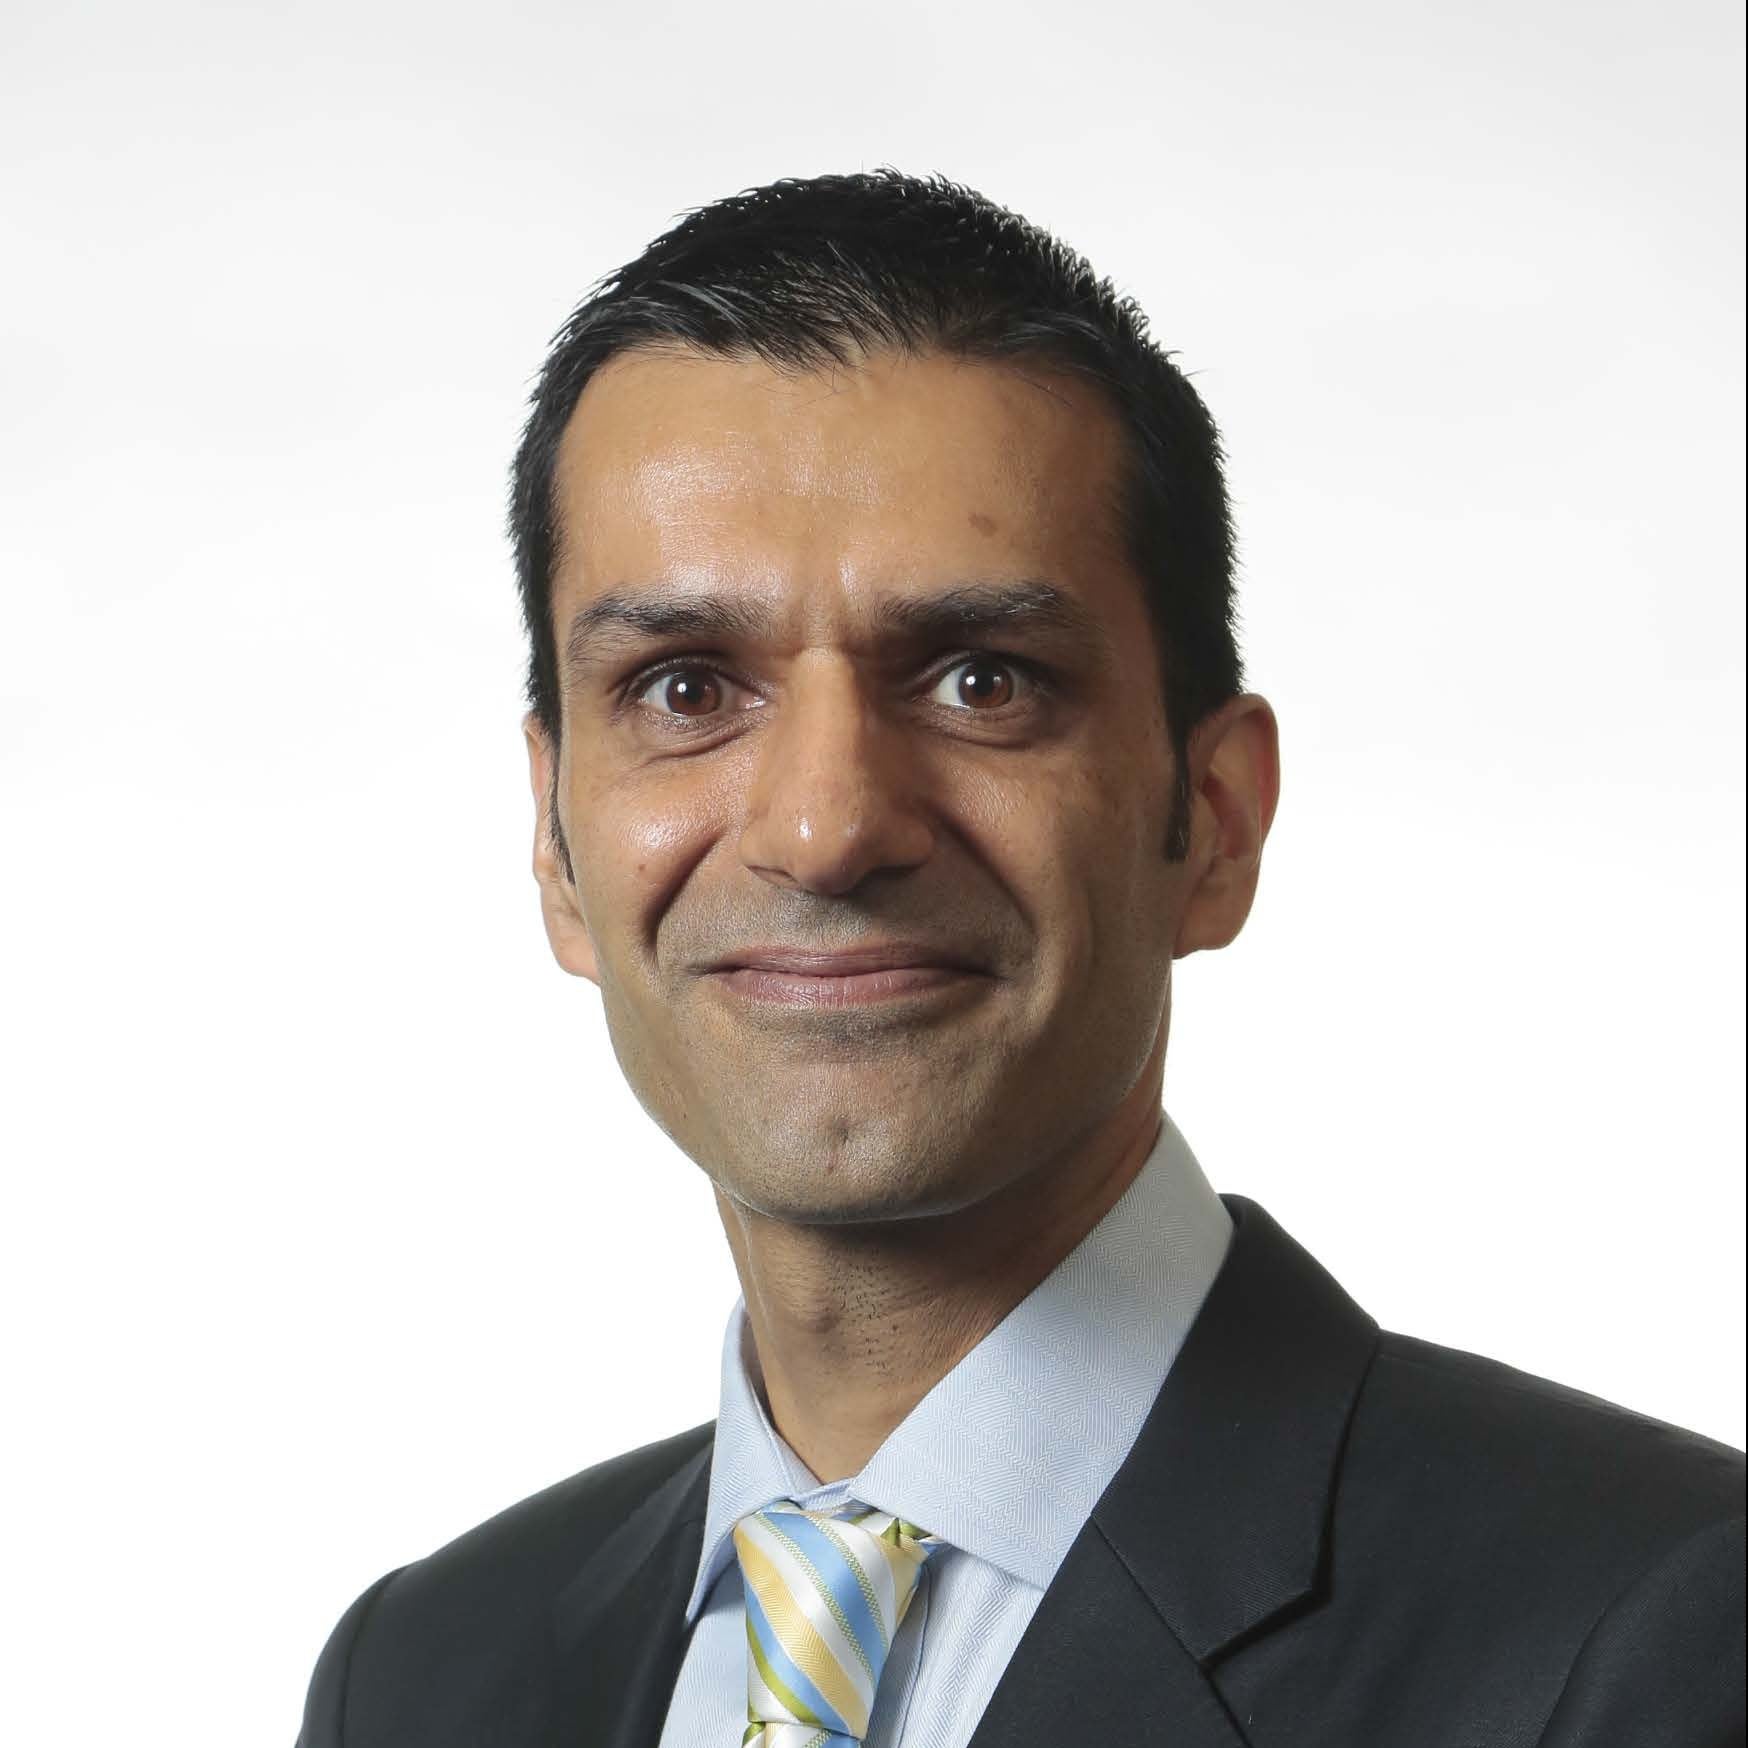 Mohammed K. Ali, MD, MSc, MBA